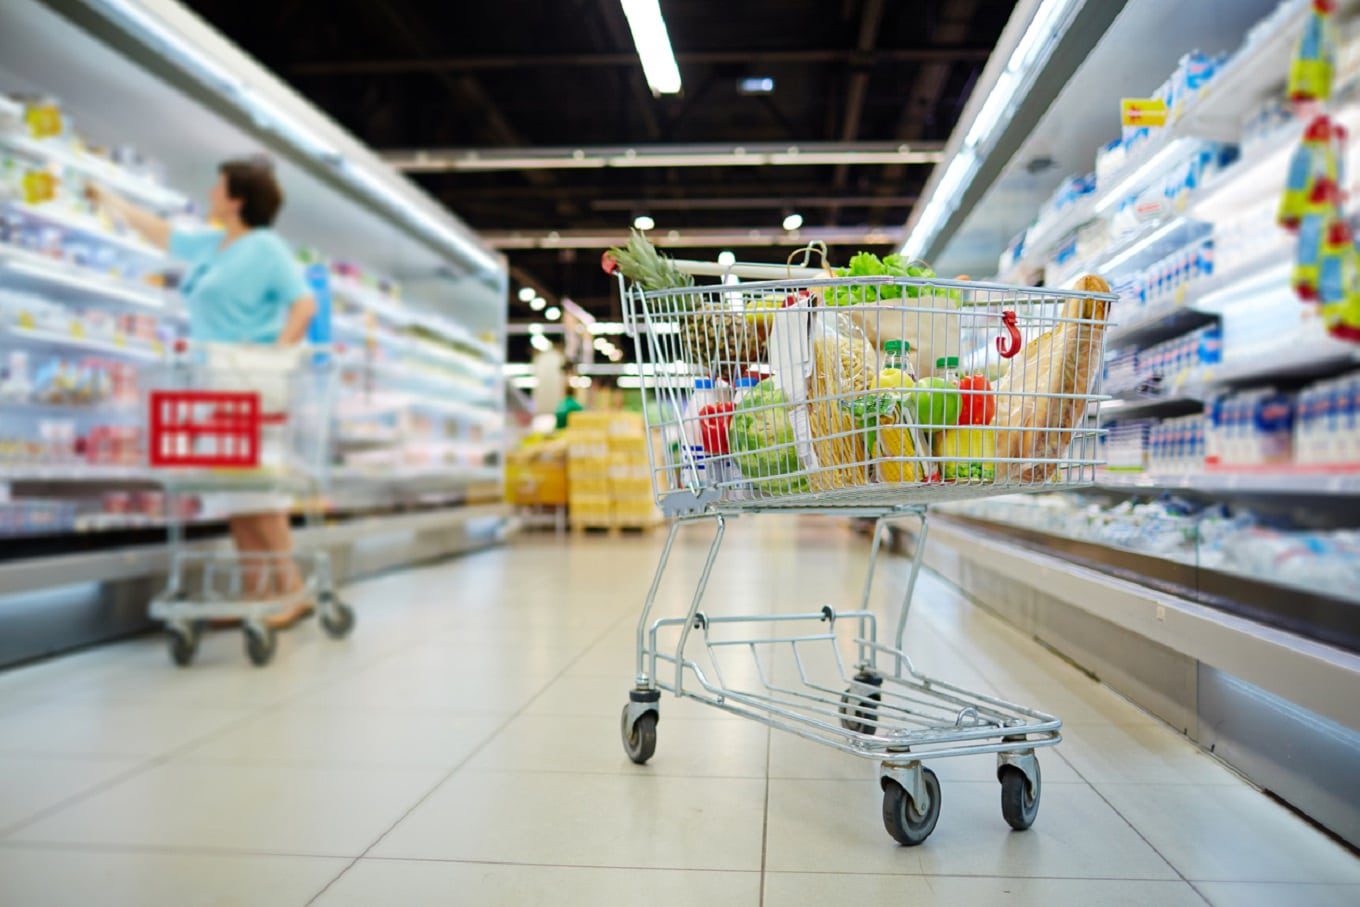 Featured image for “Consumidores querem personalização nas compras em supermercados”